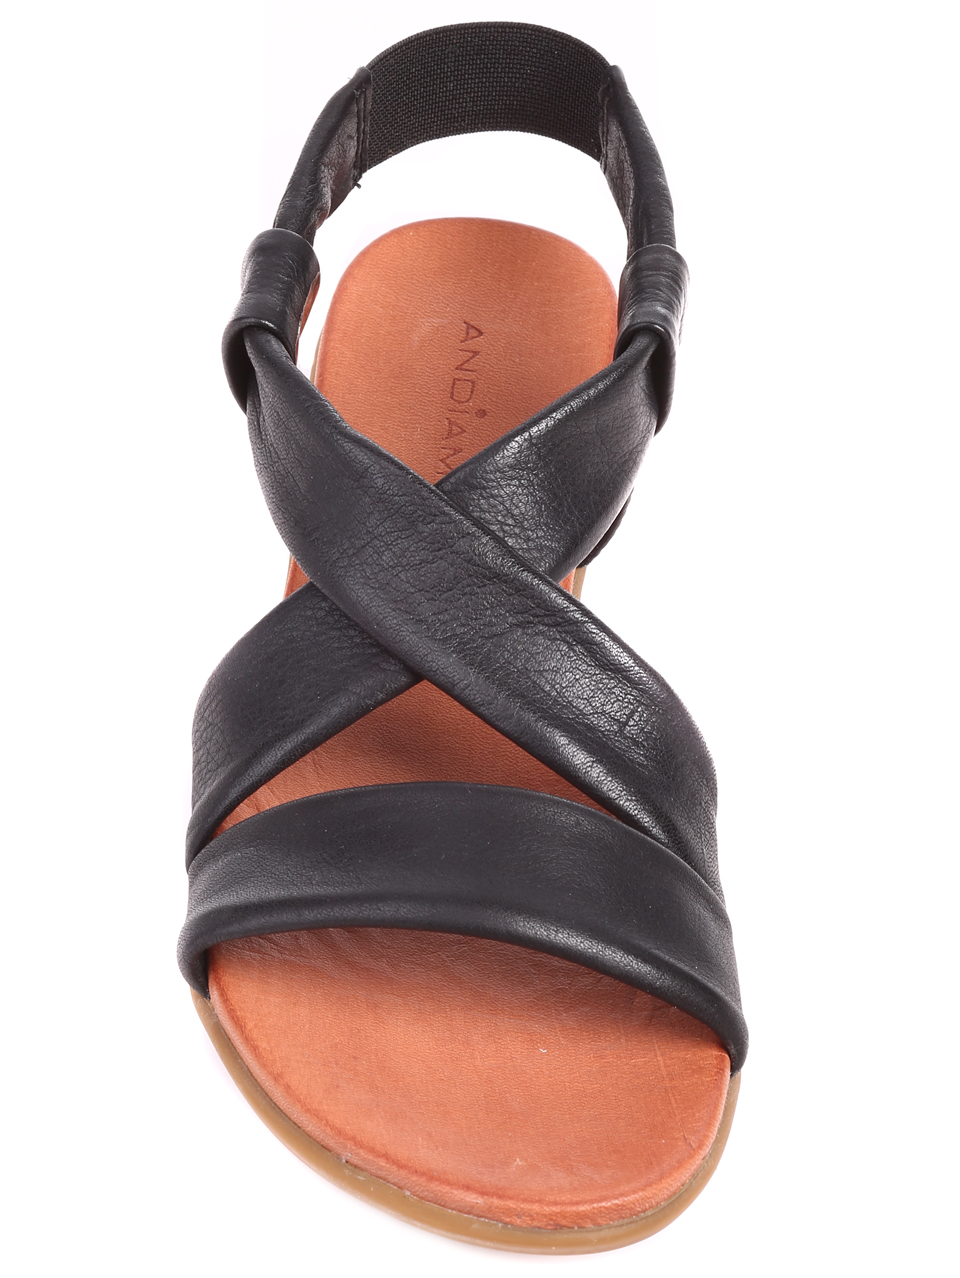 Ежедневни дамски равни сандали от естествена кожа KIRA 21 BLACK-19478-18500